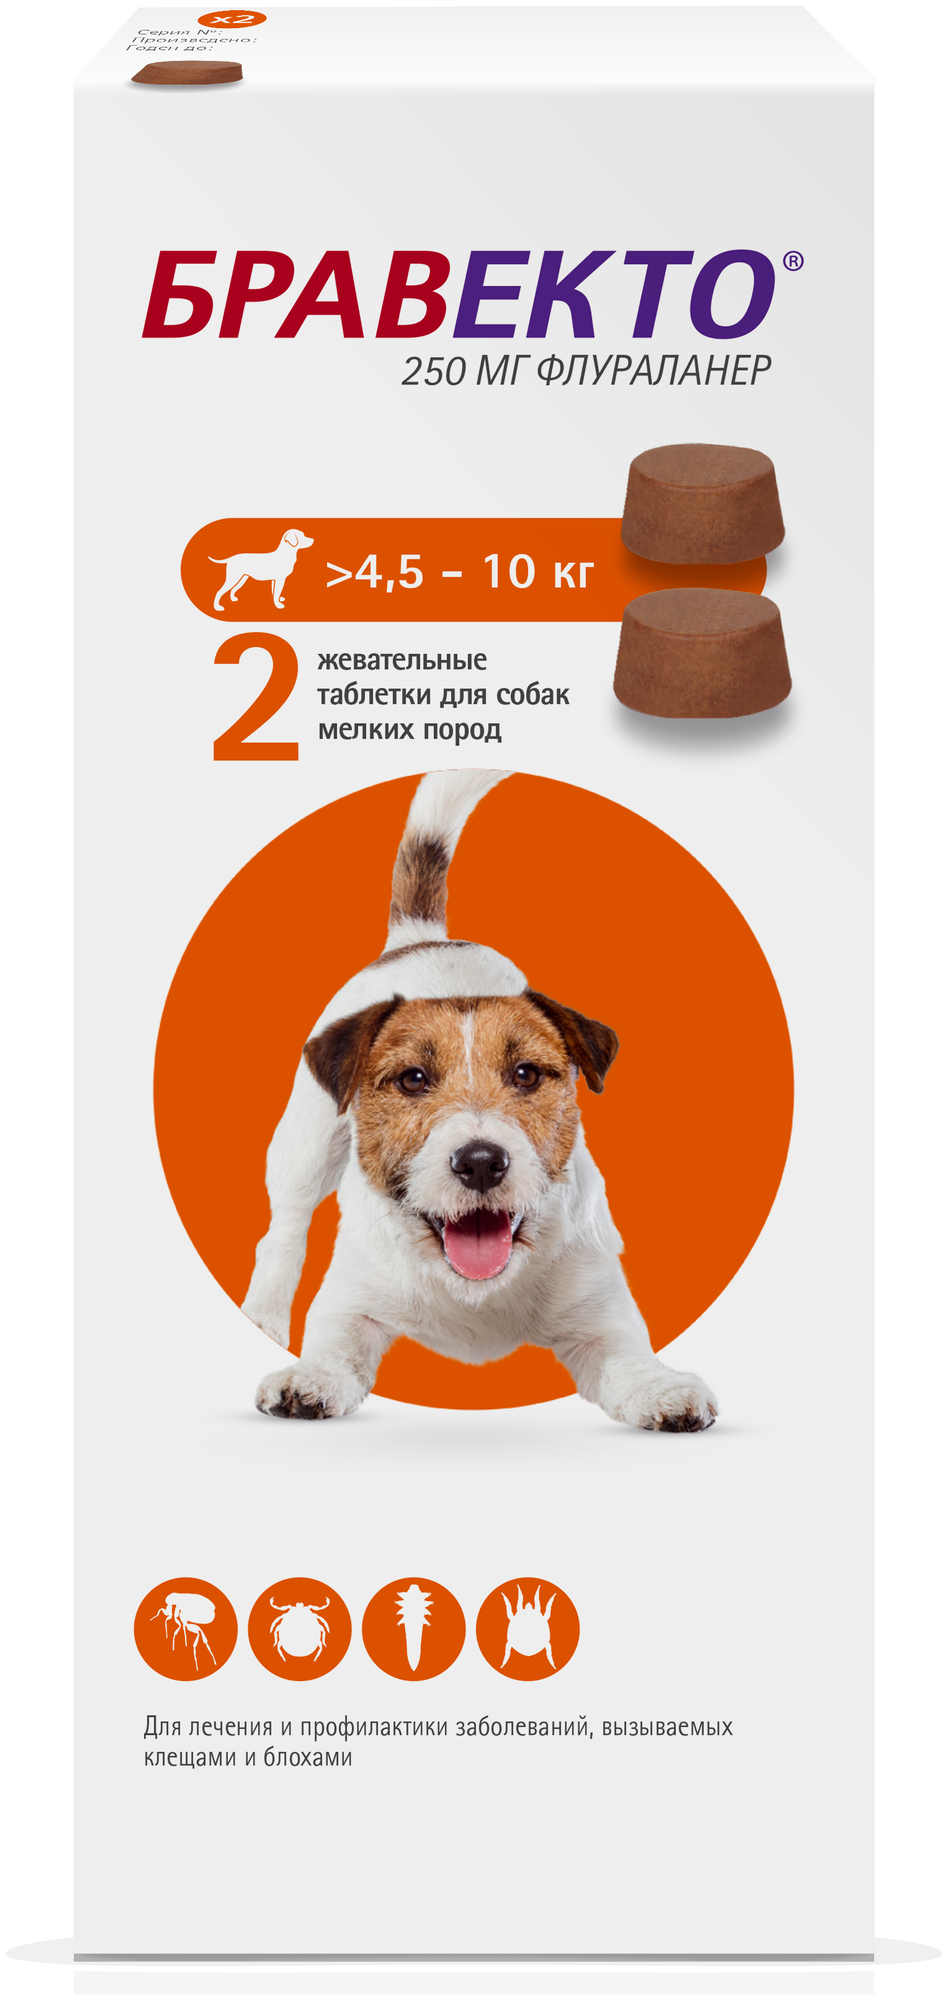 Бравекто (MSD Animal Health) таблетки от блох и клещей для мелких пород собак